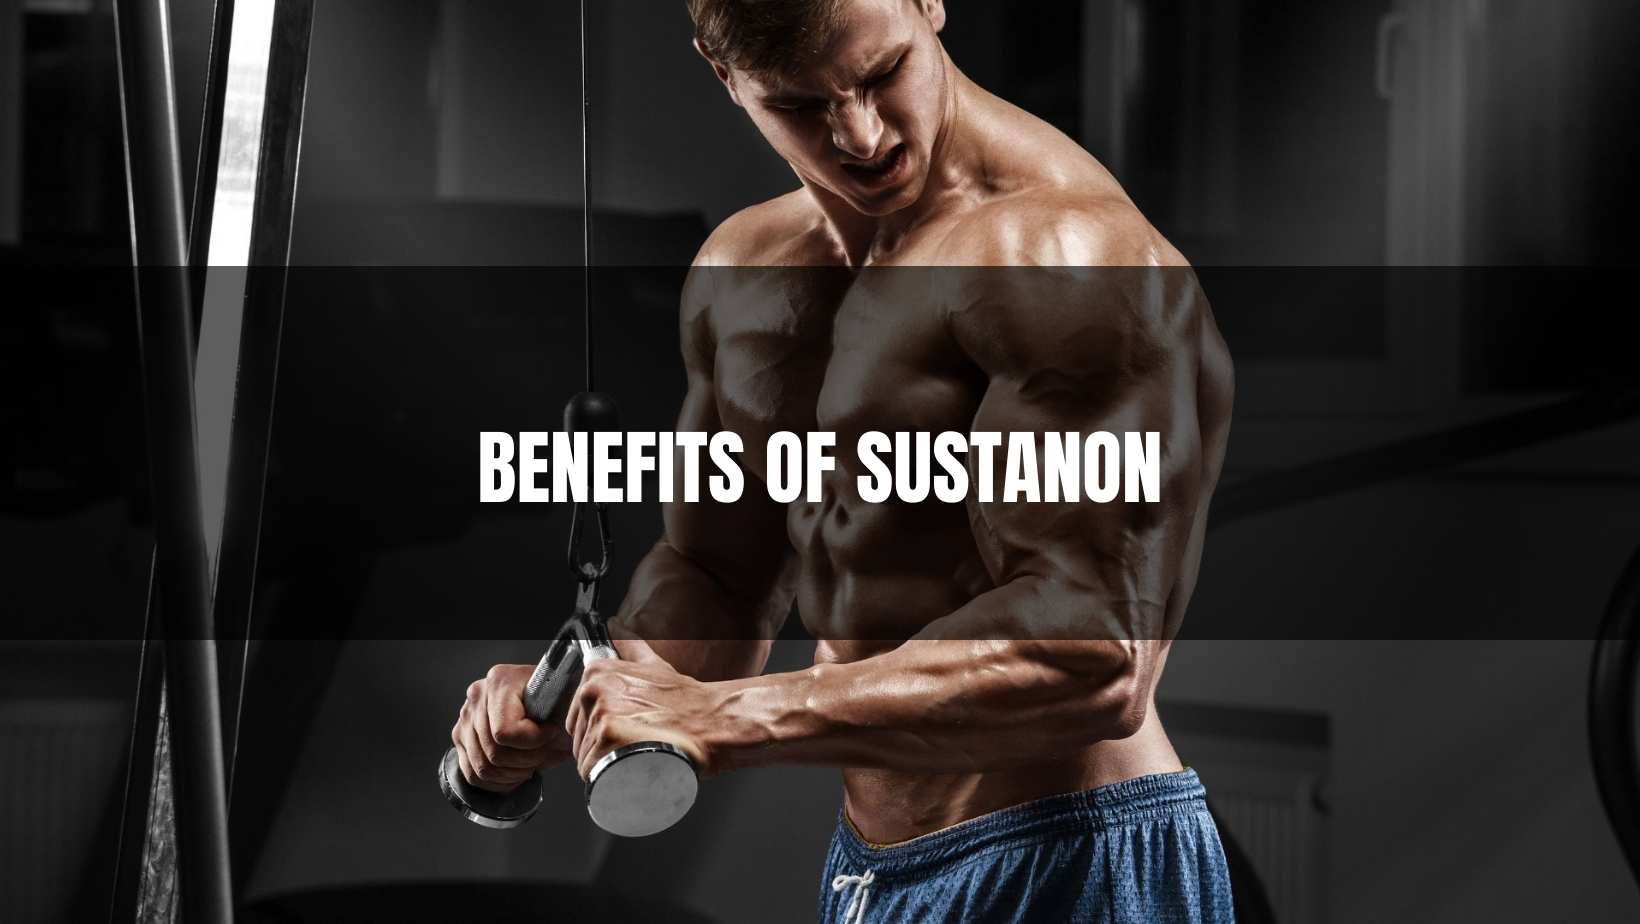 Benefits of Sustanon